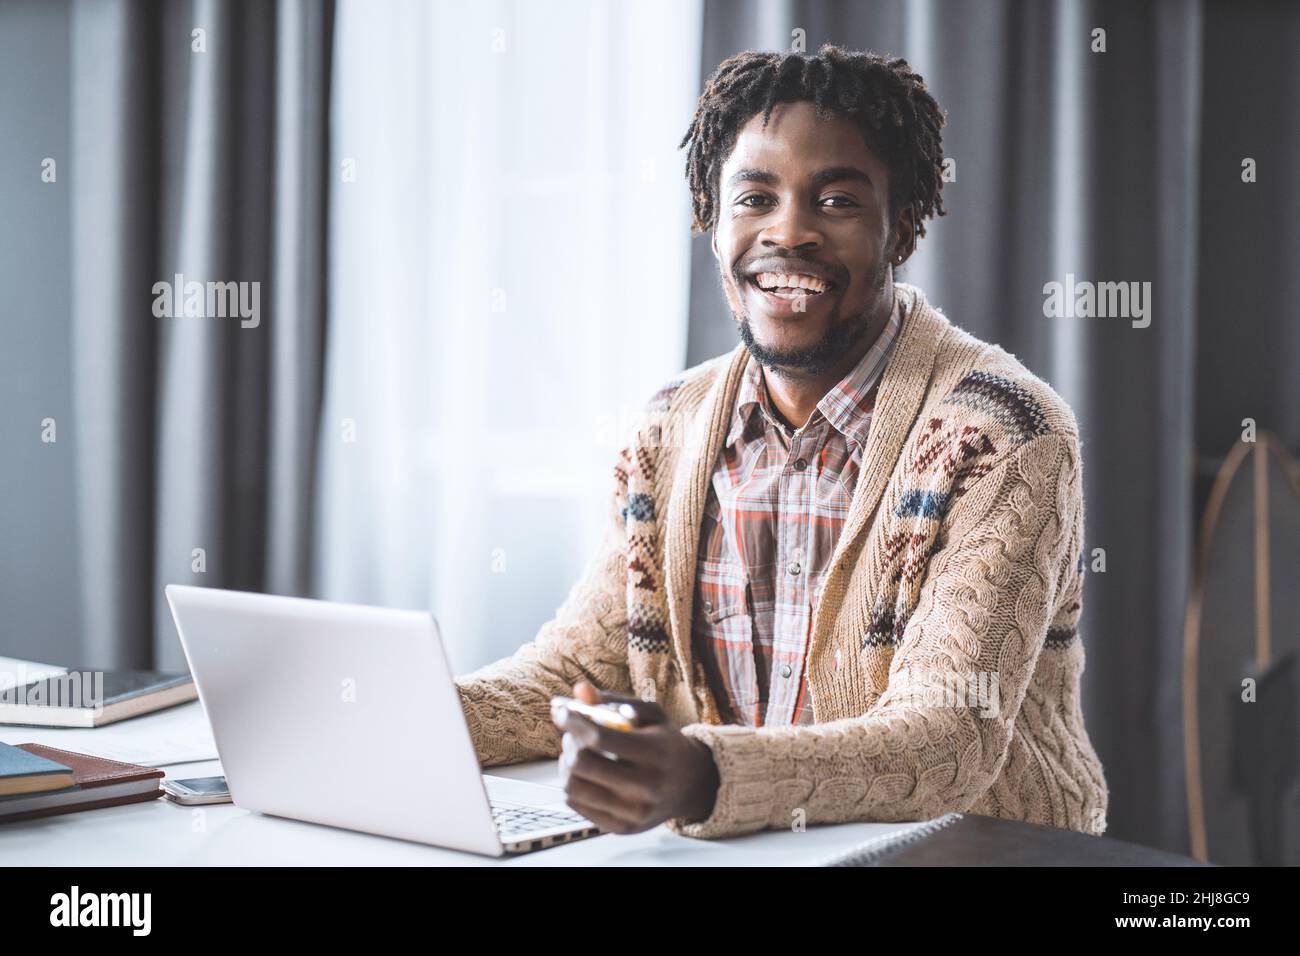 Homme africain travaillant à la maison en utilisant un ordinateur portable assis à côté de la fenêtre.Jeune entrepreneur travaillant sur son ordinateur portable à la maison.Des étudiants afro-américains étudient à la maison pendant le confinement. Banque D'Images